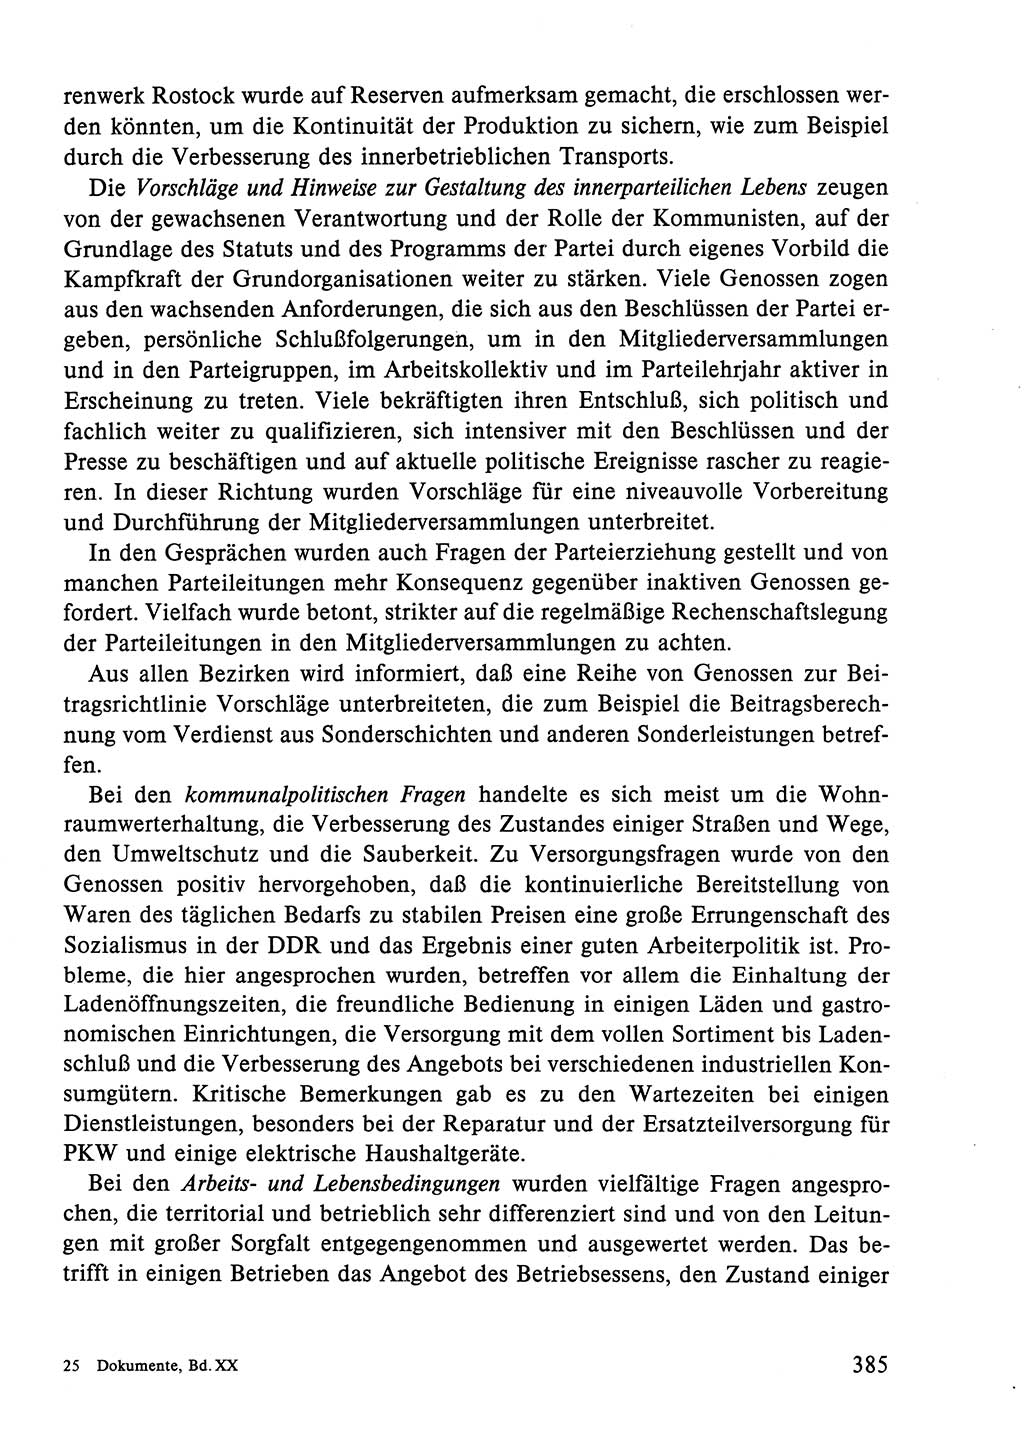 Dokumente der Sozialistischen Einheitspartei Deutschlands (SED) [Deutsche Demokratische Republik (DDR)] 1984-1985, Seite 385 (Dok. SED DDR 1984-1985, S. 385)